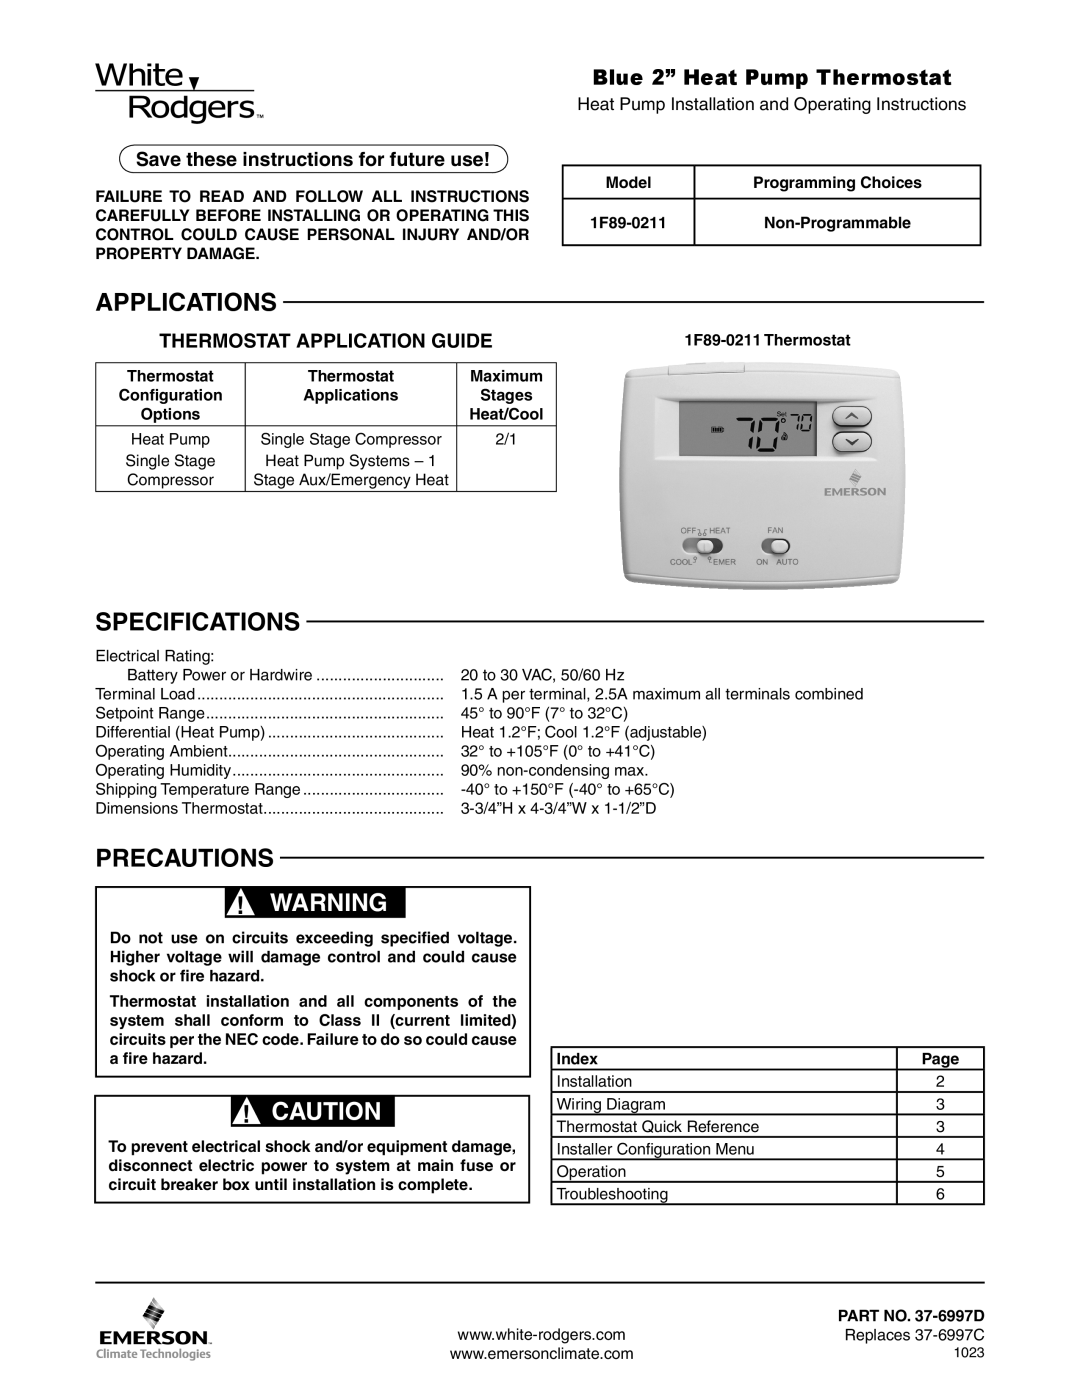 White Rodgers 1F89-0211 dimensions Applications, Spécifications, Précautions, Thermostats Remplacés, Mise En Garde 